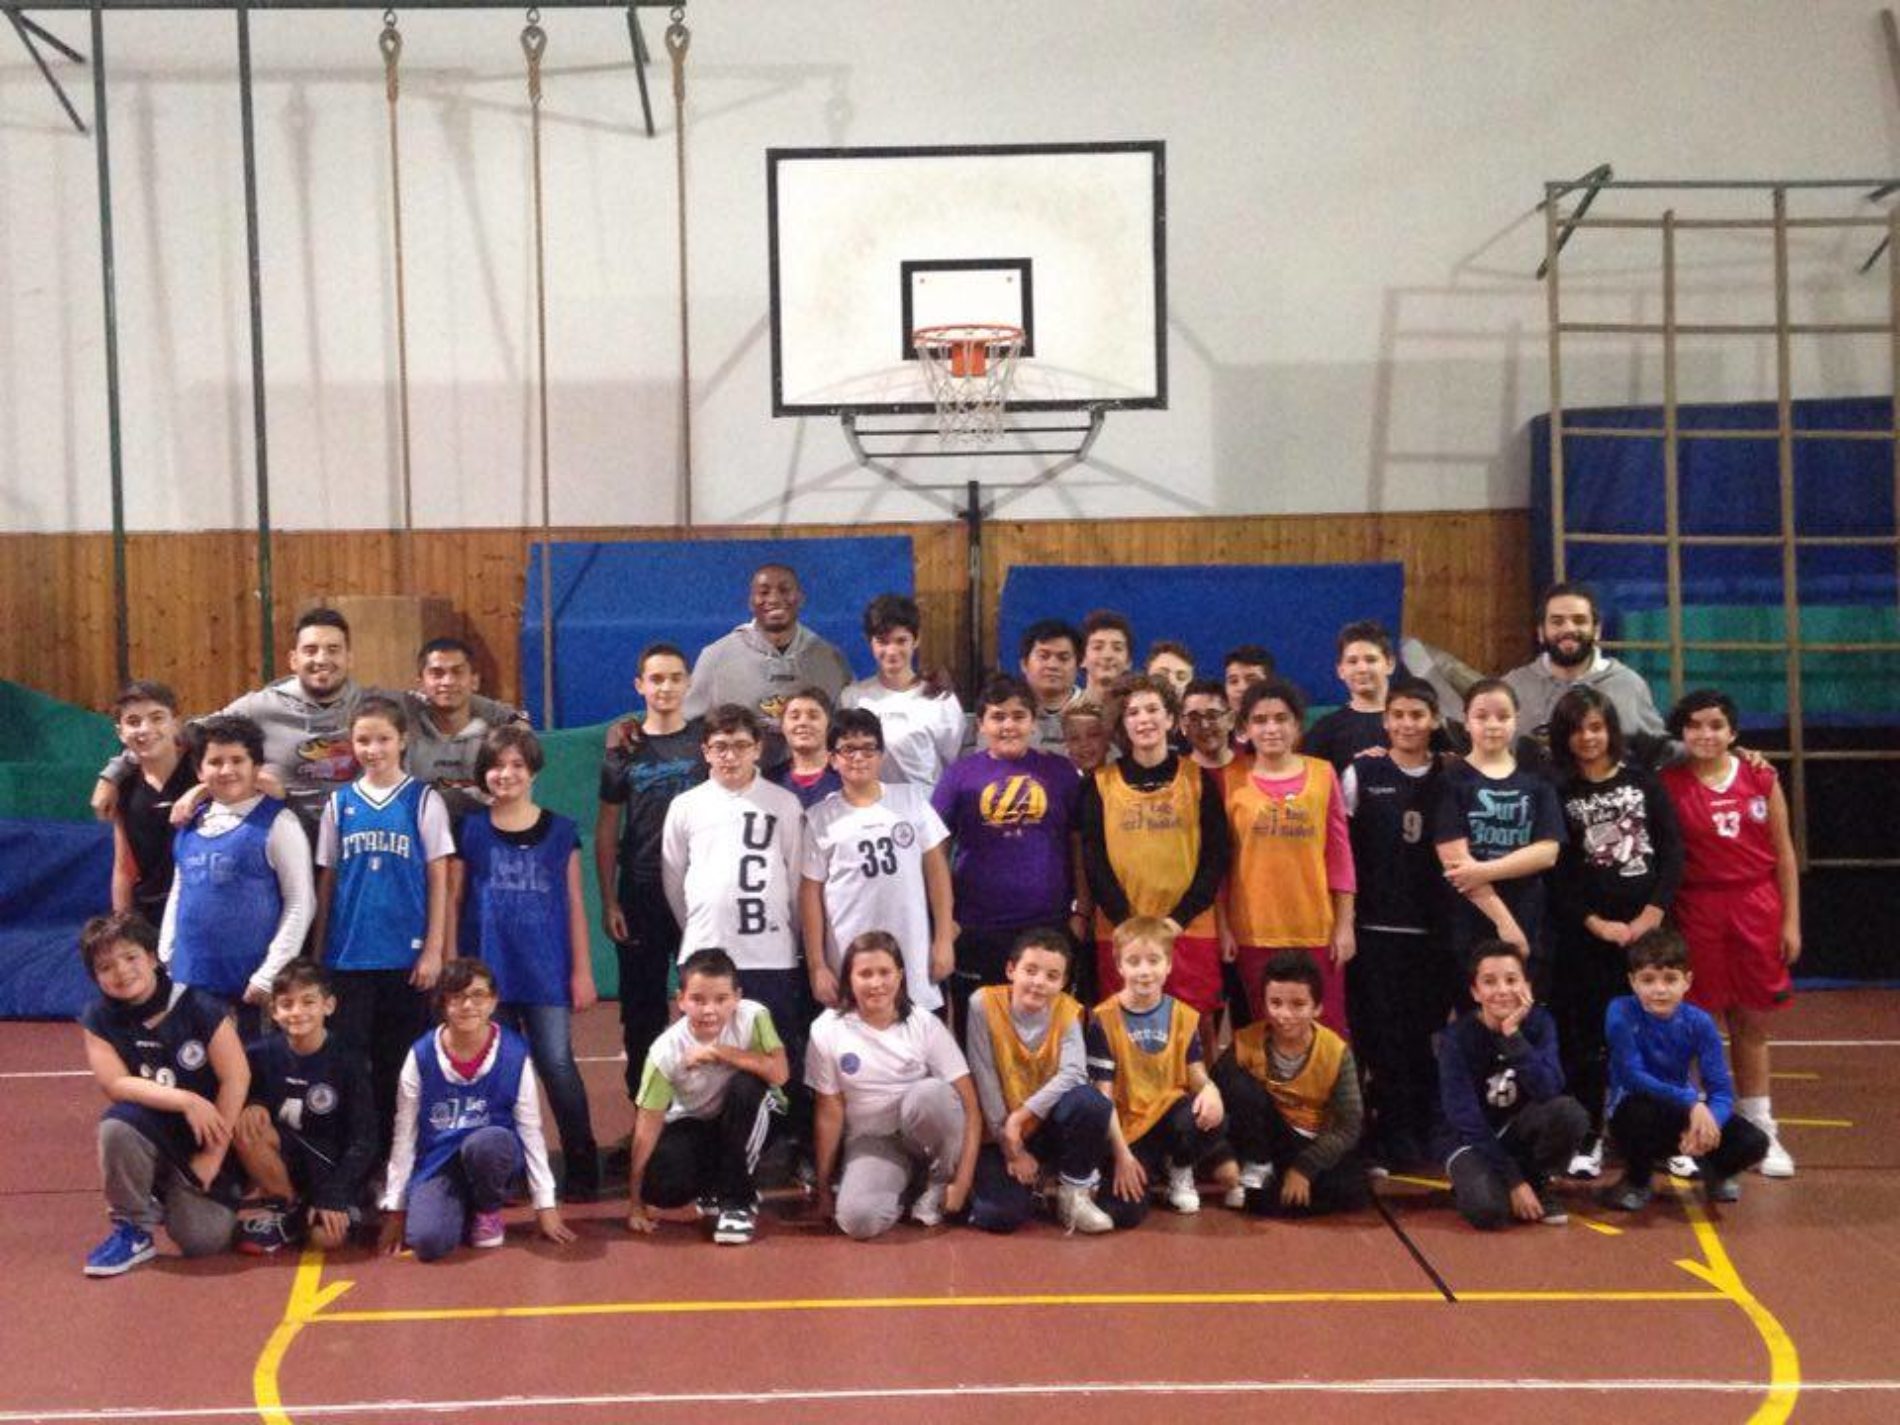 La società di basket, Libertas Consolini esempio di integrazione sociale. Il coach Milano: ” Per noi un extracomunitario non è un diverso ma un fratello”